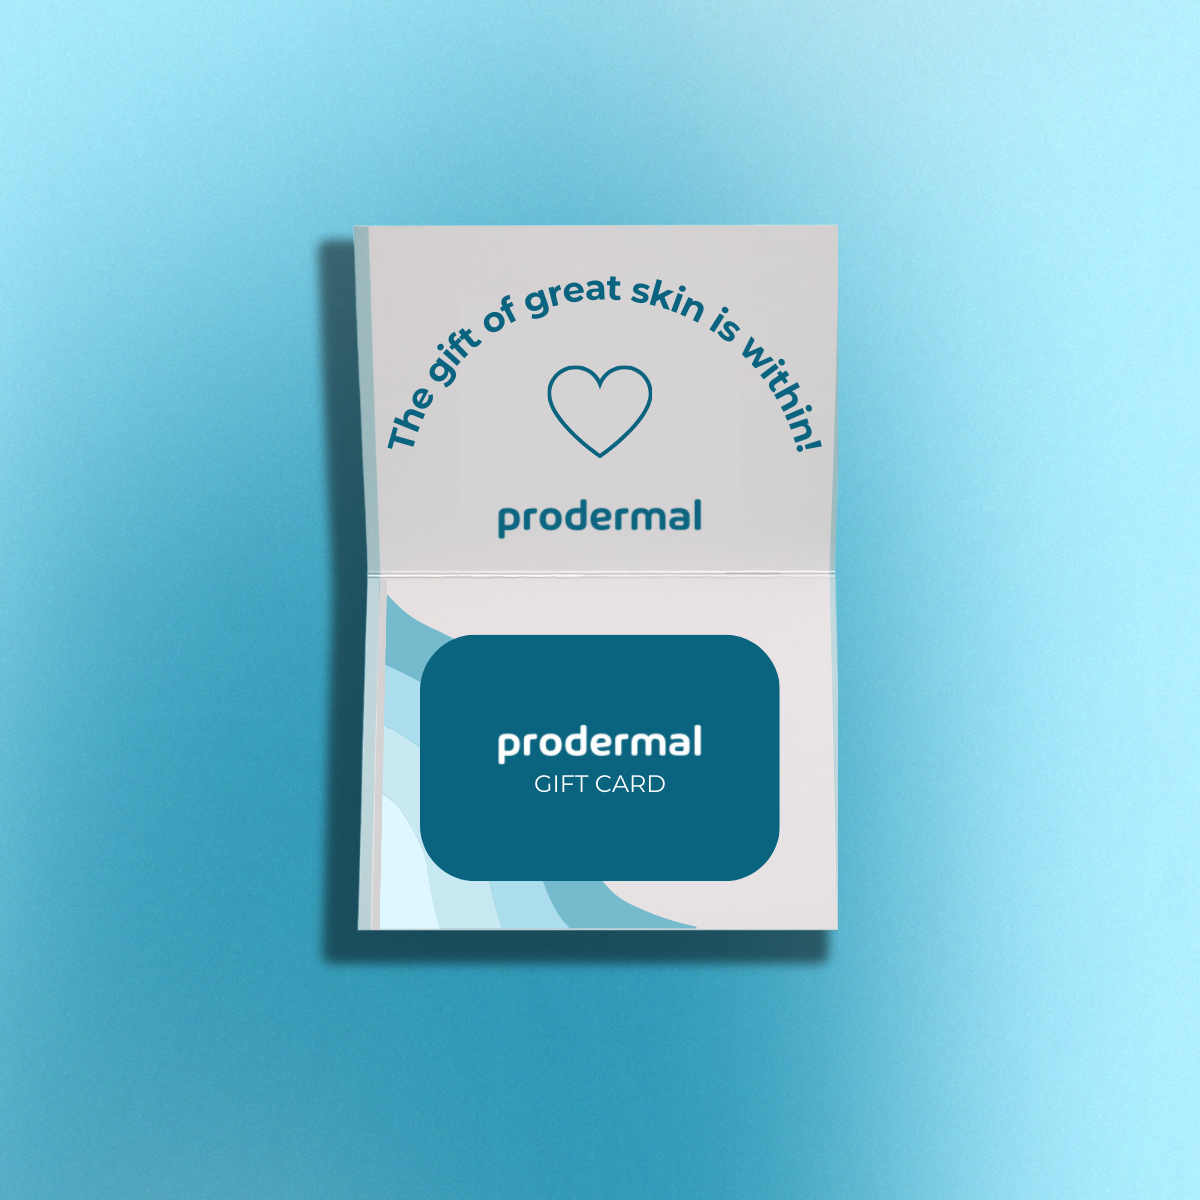 Prodermal gift card